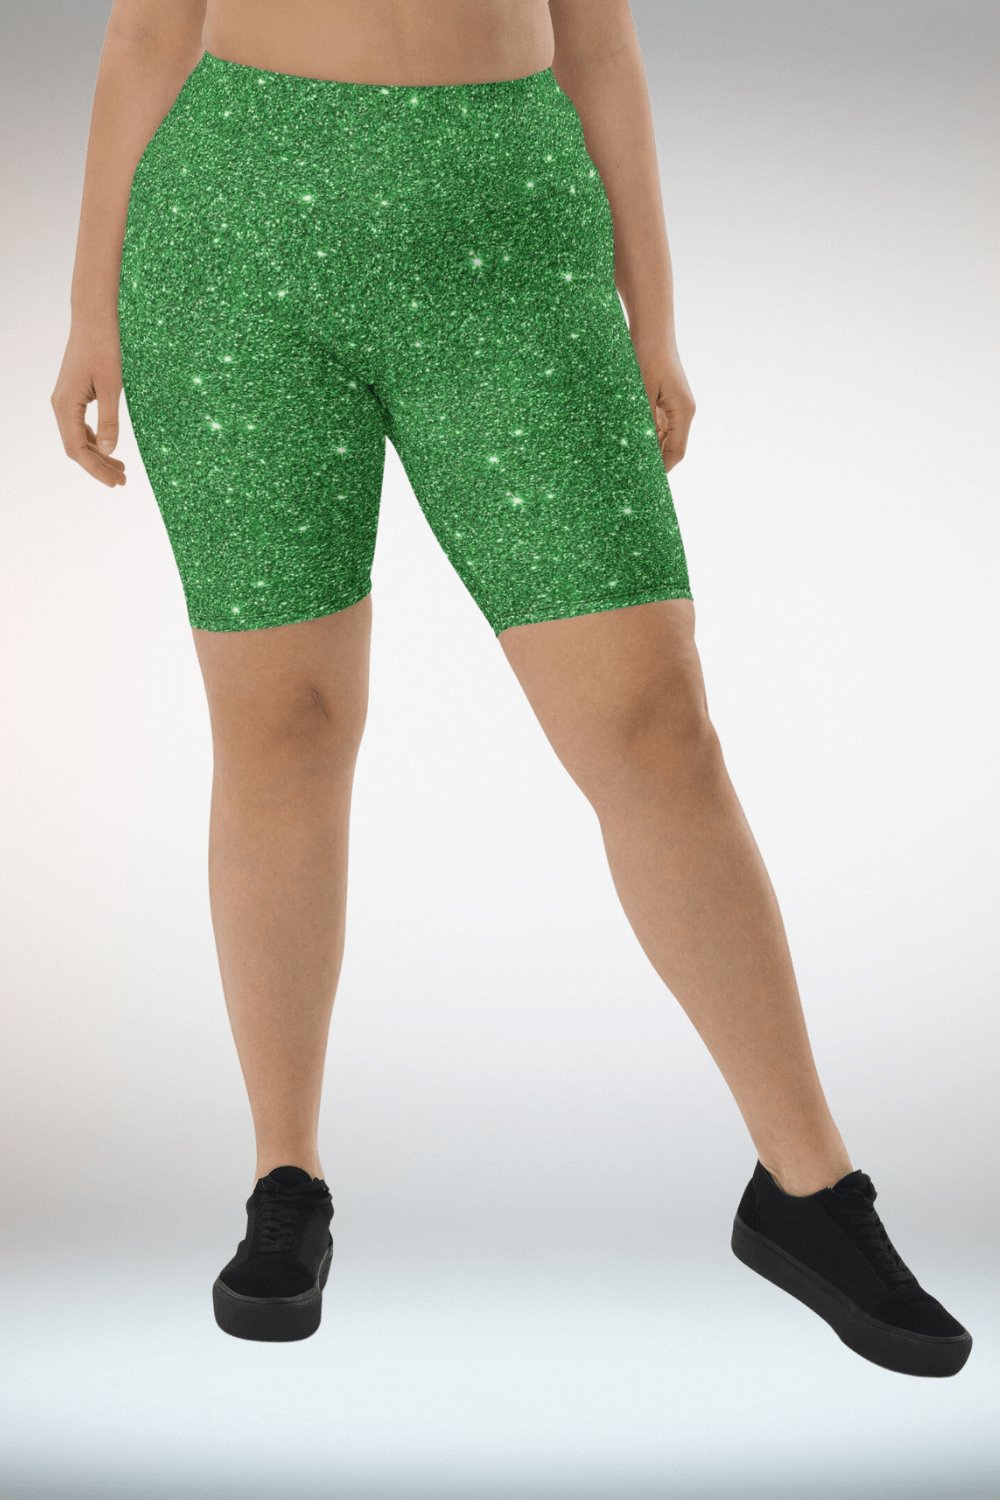 Glitter Print Green Biker Shorts - TGC Boutique - Shorts